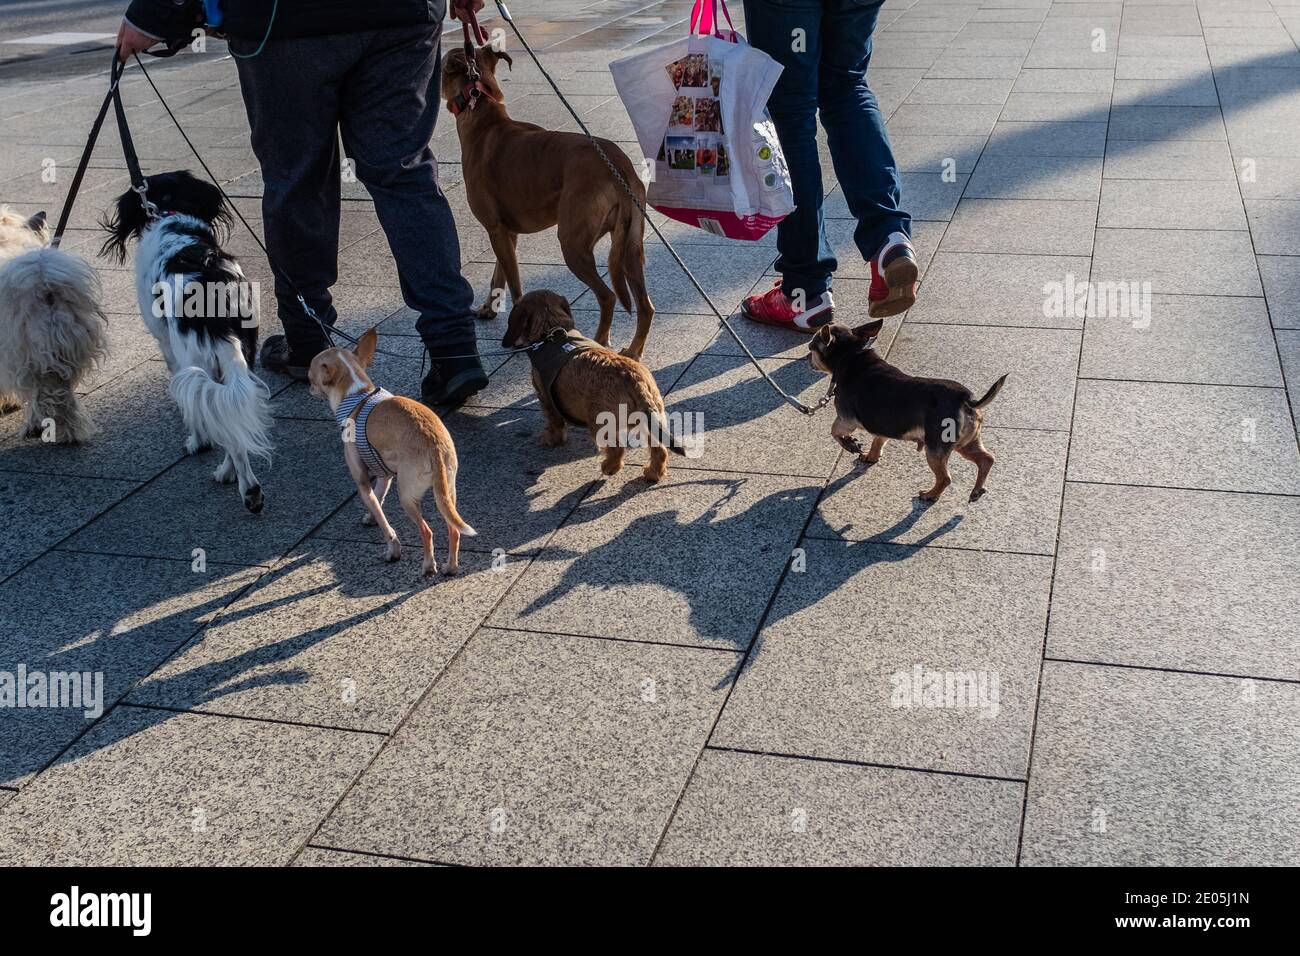 Una mujer camina con perros de mascotas en una correa, probablemente ella es una niñera de mascotas. Un hombre la acompaña después de ir de compras al centro de la ciudad. Composición horizontal. Foto de stock